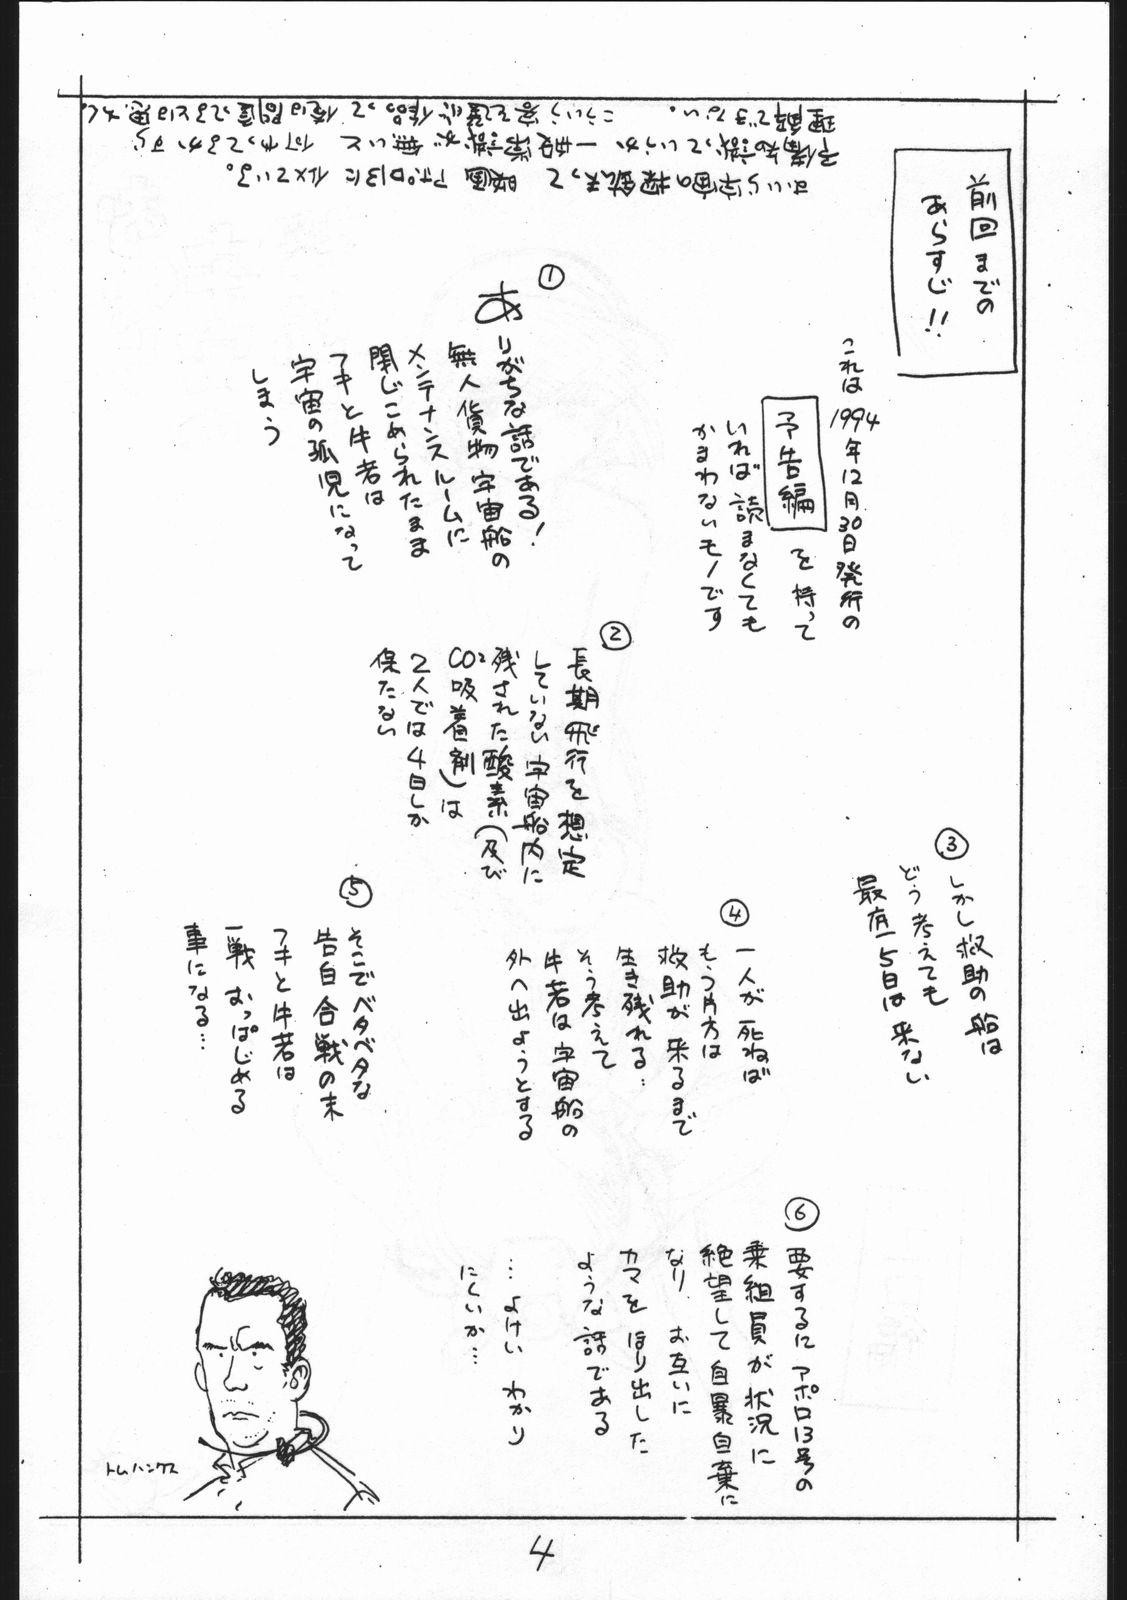 Young Tits Enpitsu Egaki H Manga Vol. 3 - Yamato takeru Sluts - Page 4